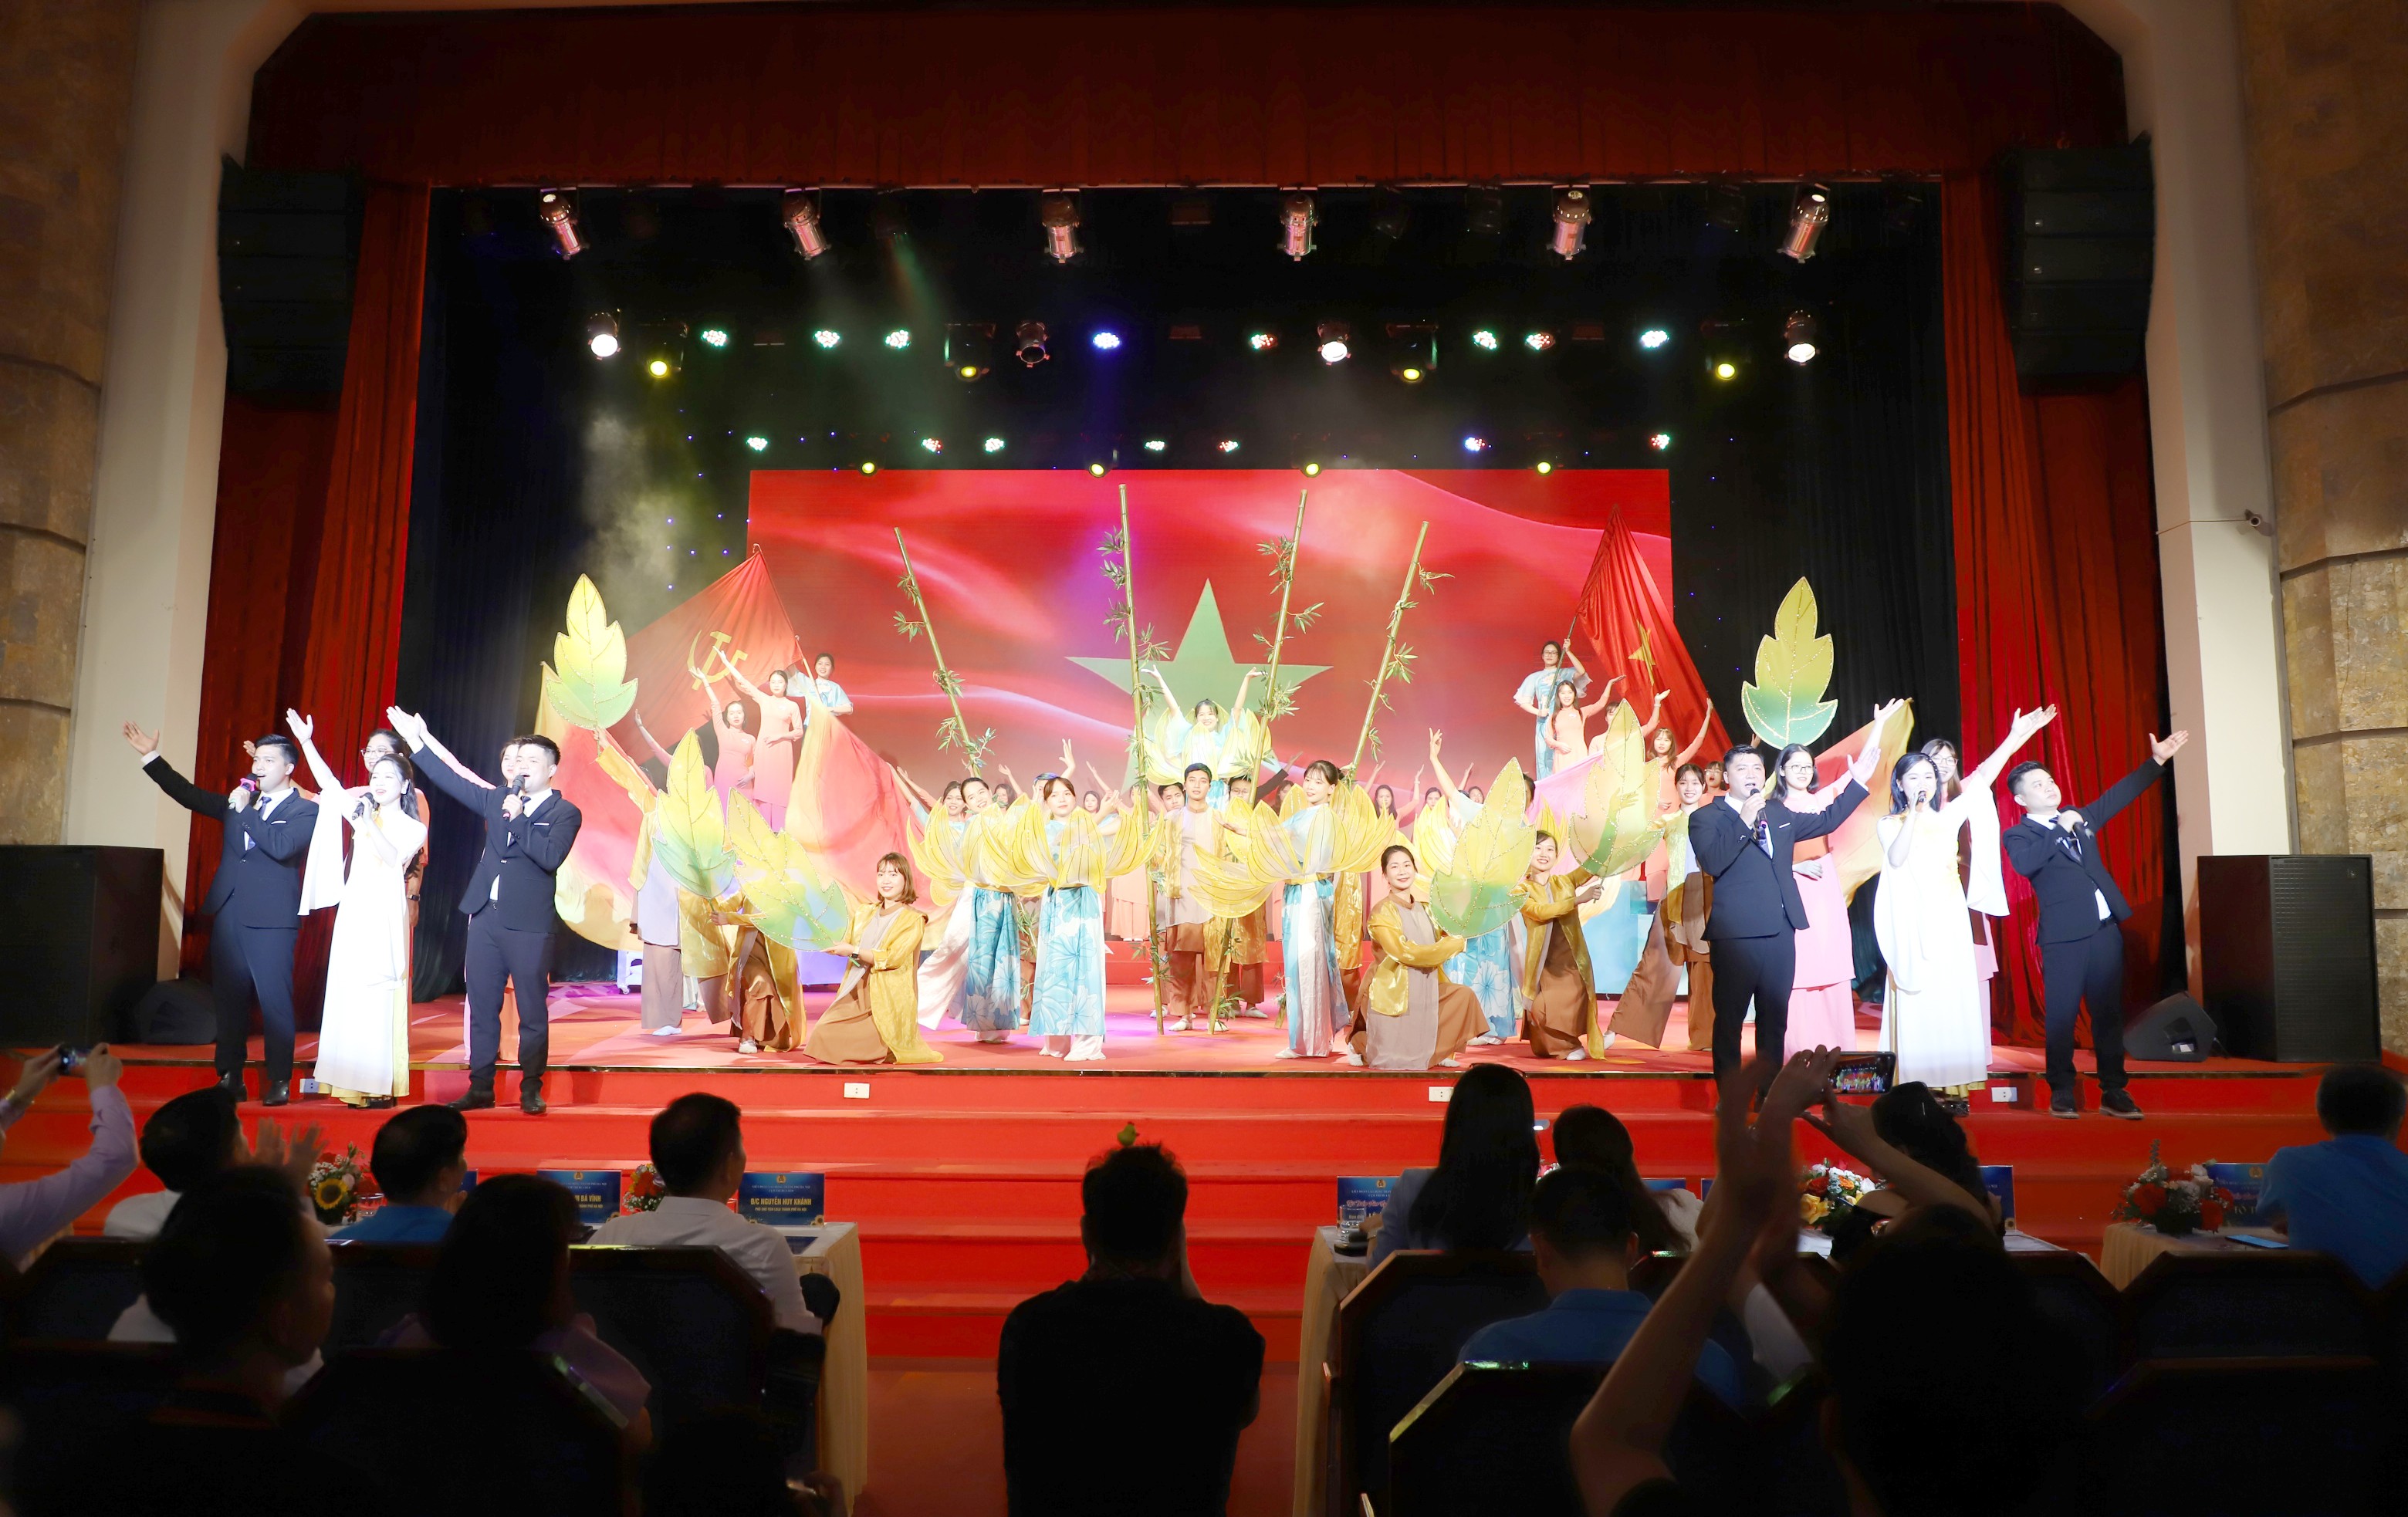 Sôi nổi Hội diễn văn nghệ tại Cụm thi đua số 8 LĐLĐ thành phố Hà Nội